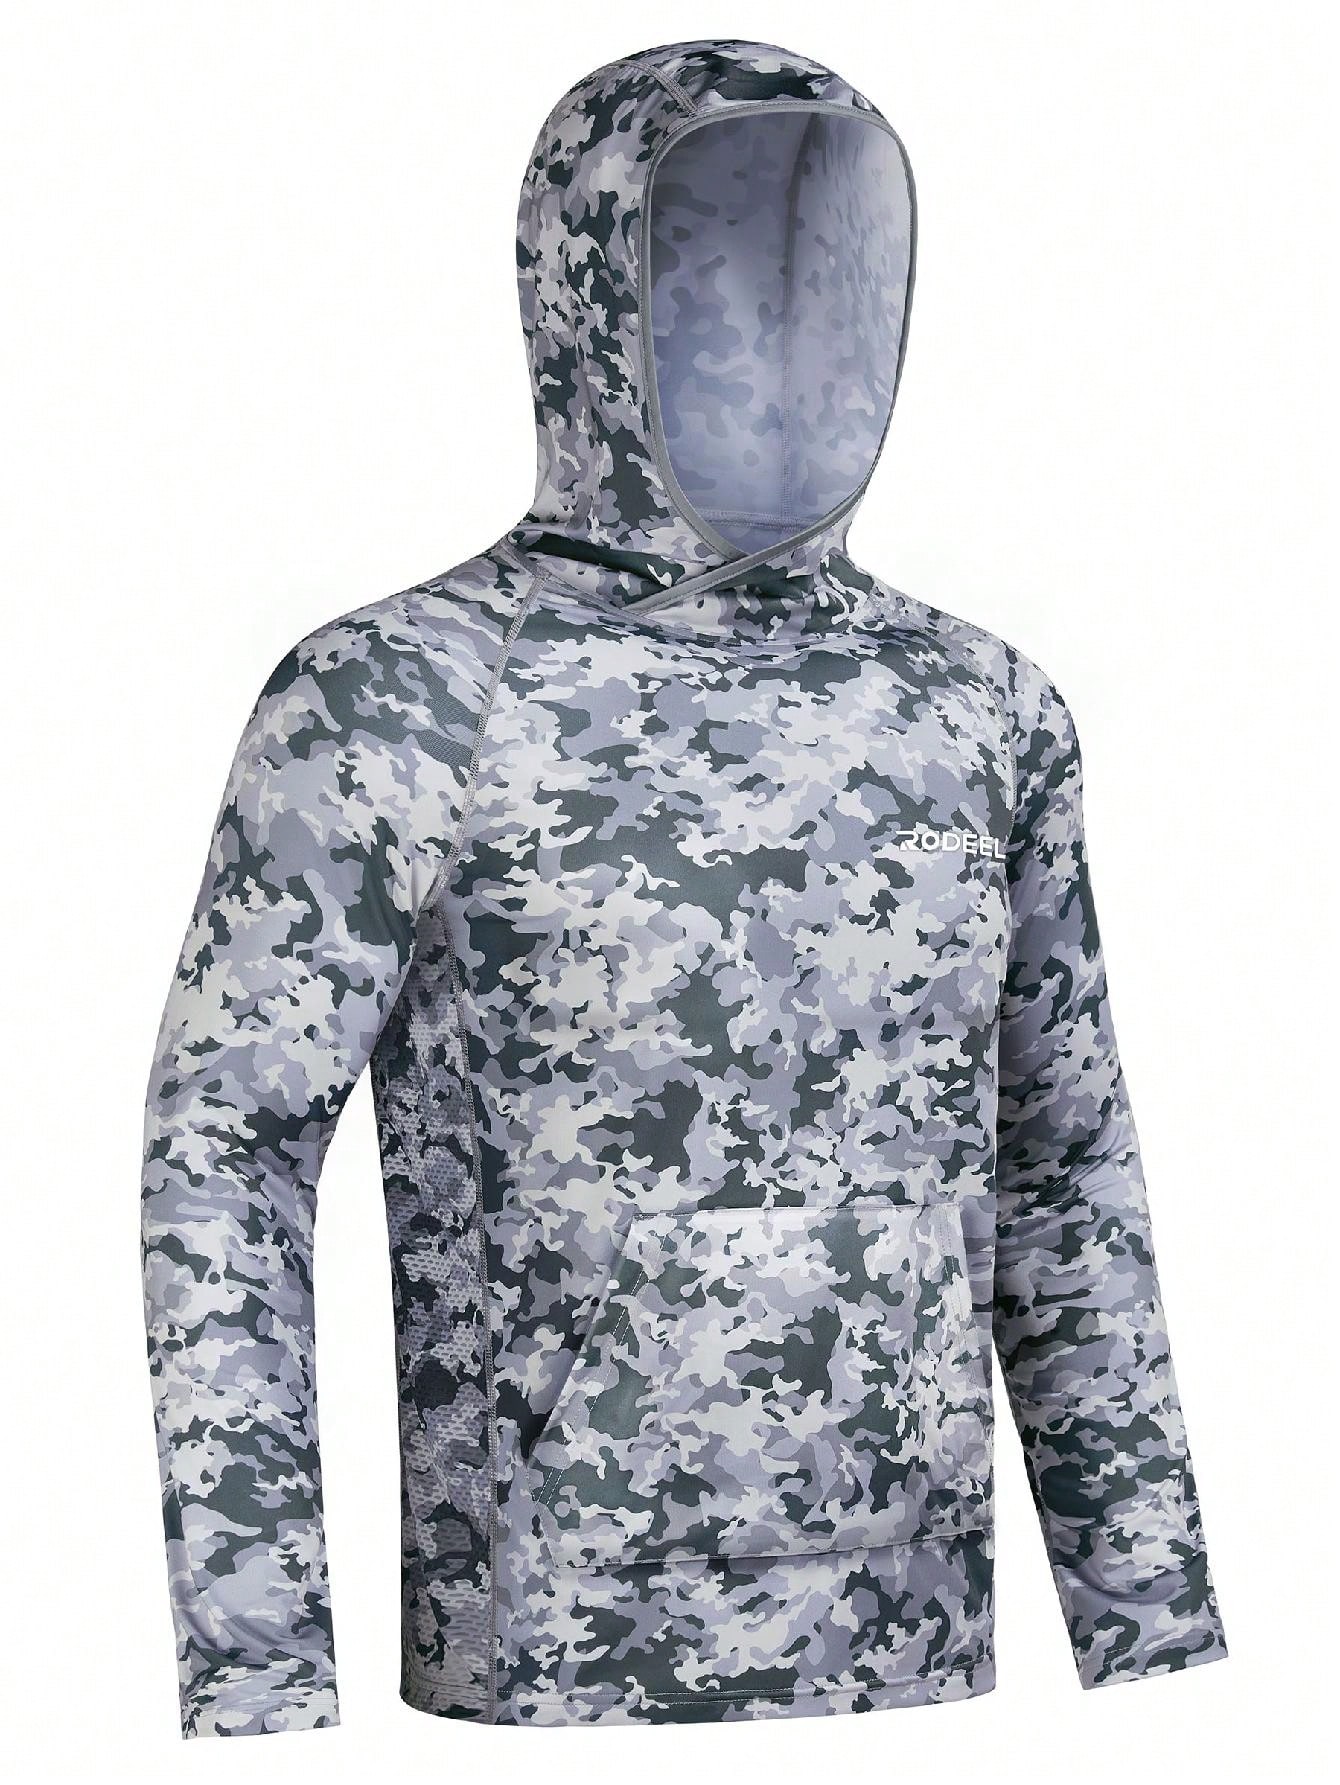 цена RODEEL Мужская рубашка с капюшоном и защитой от солнца UPF 50+, серый